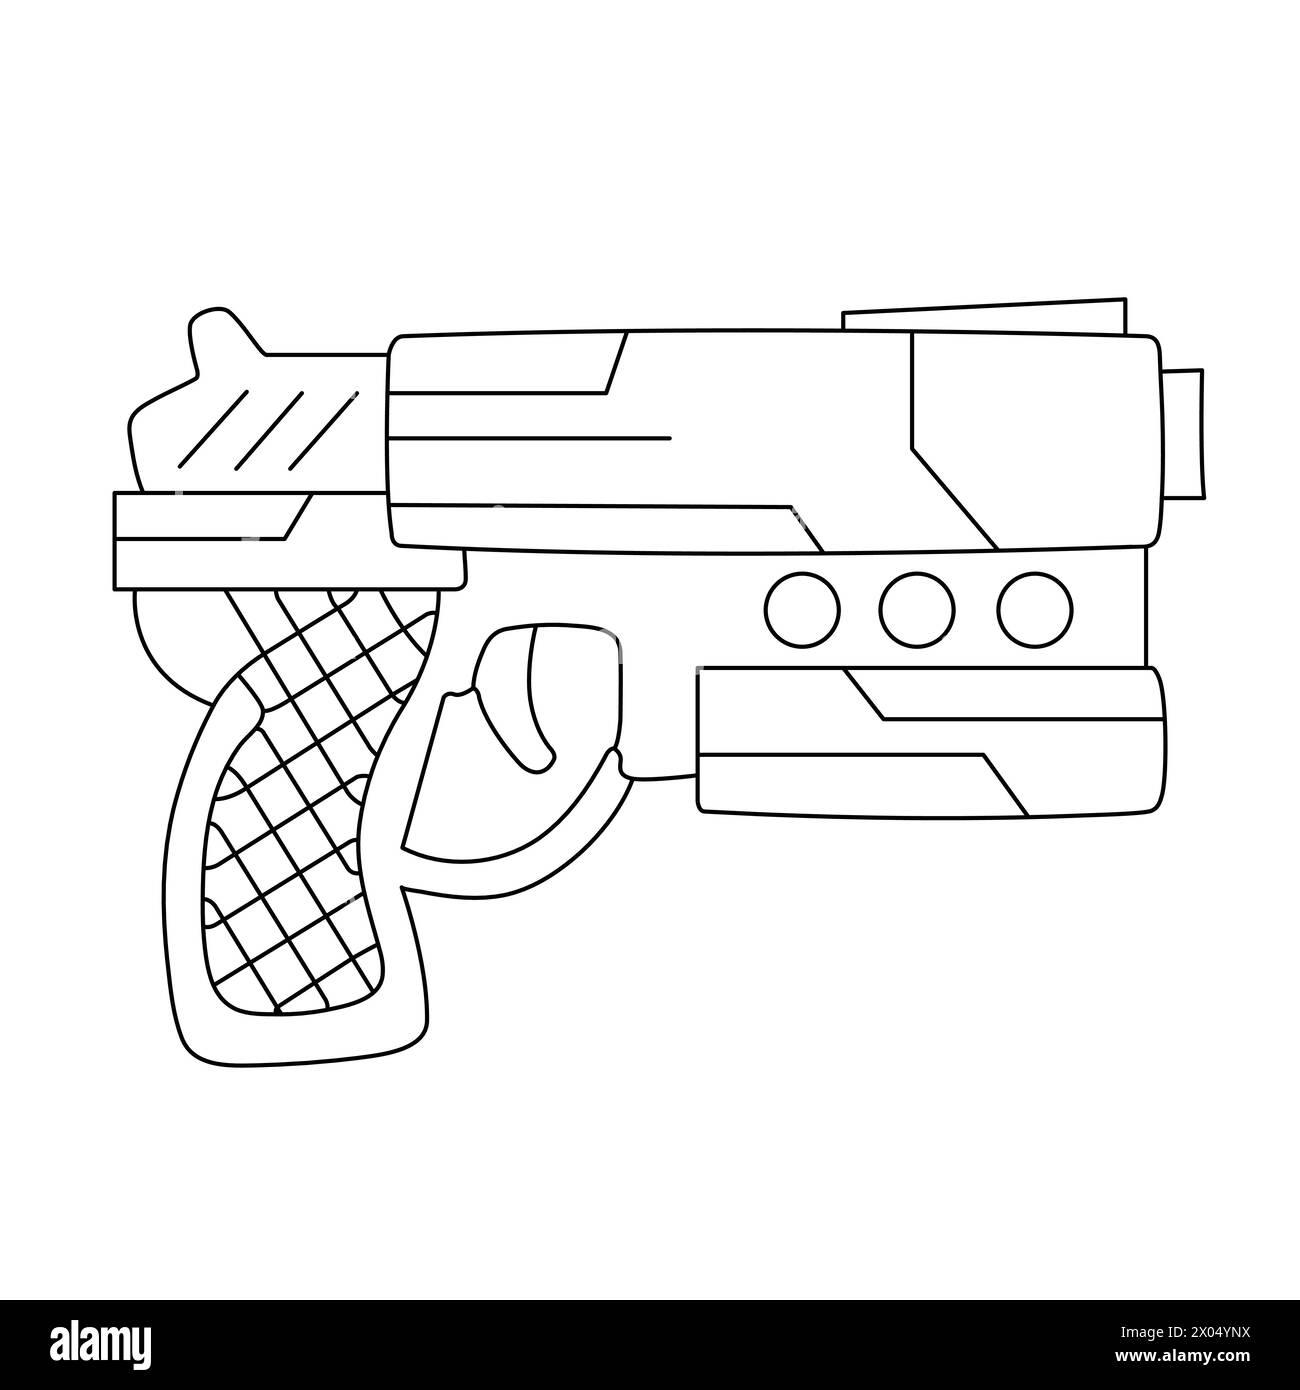 Farbseite Für Pistolen. Feuerwaffe Vektor-Illustration. Isolierter Revolver Auf Weißem Hintergrund. Waffen-Silhouette. Pistolenvektor Stock Vektor